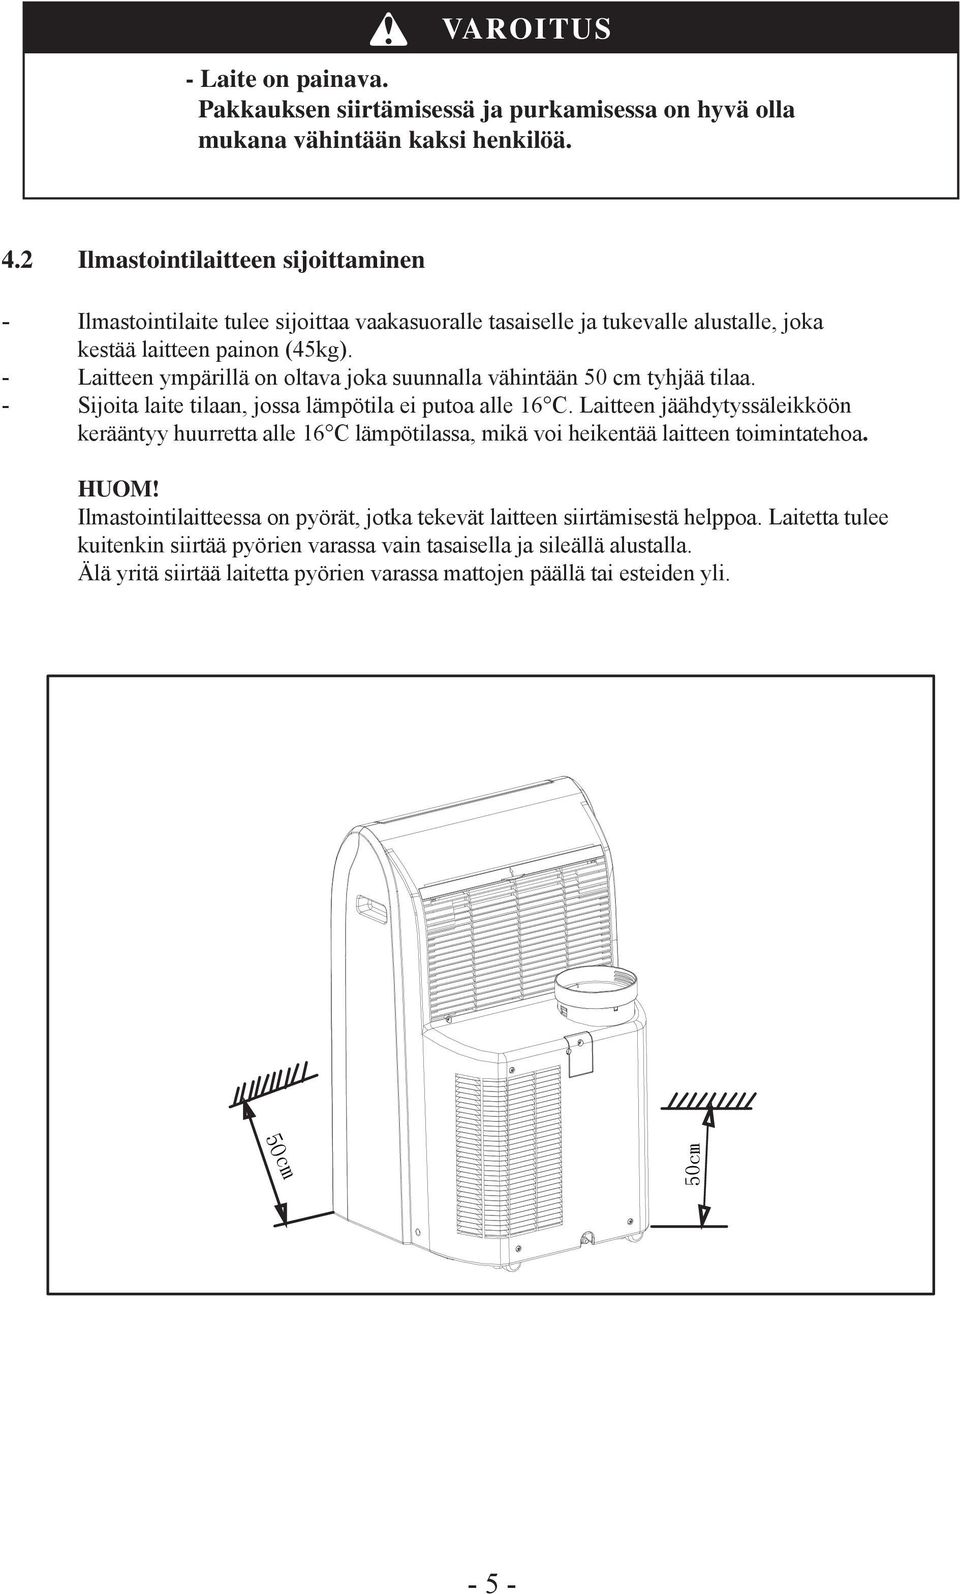 2 Ilmastointilaitteen sijoittaminen - Ilmastointilaite tulee sijoittaa vaakasuoralle tasaiselle ja tukevalle alustalle, joka kestää laitteen painon (45kg).